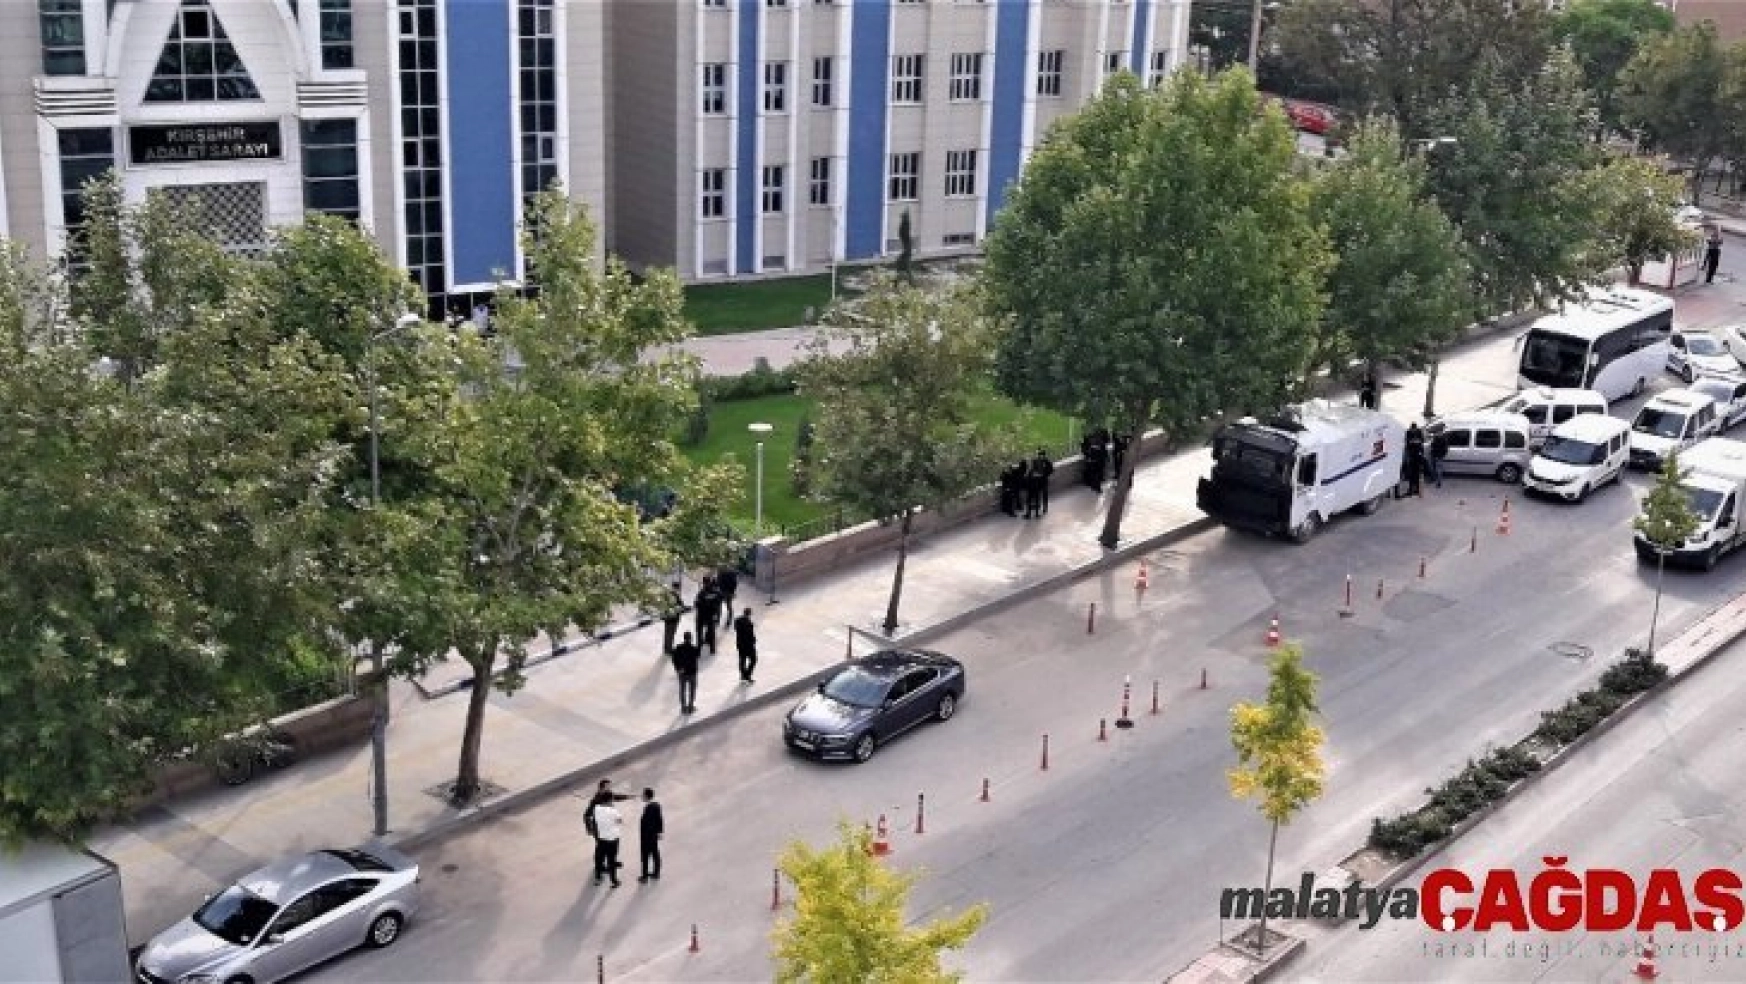 Oy verme işleminde öldürülen 2 kişinin davası Kırşehir'de görüldü